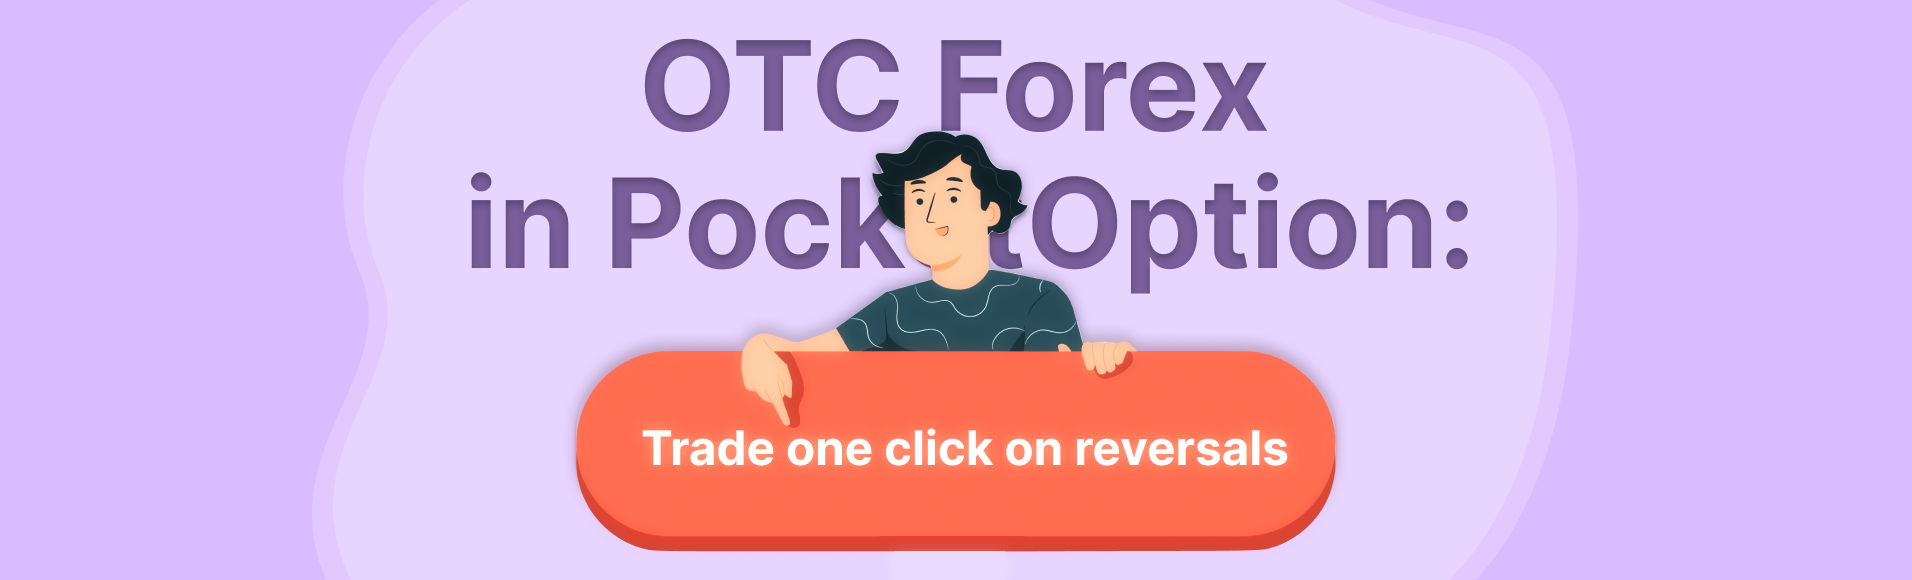 OTC Forex sa PocketOption: mag-trade ng isang click sa mga pagbaliktad